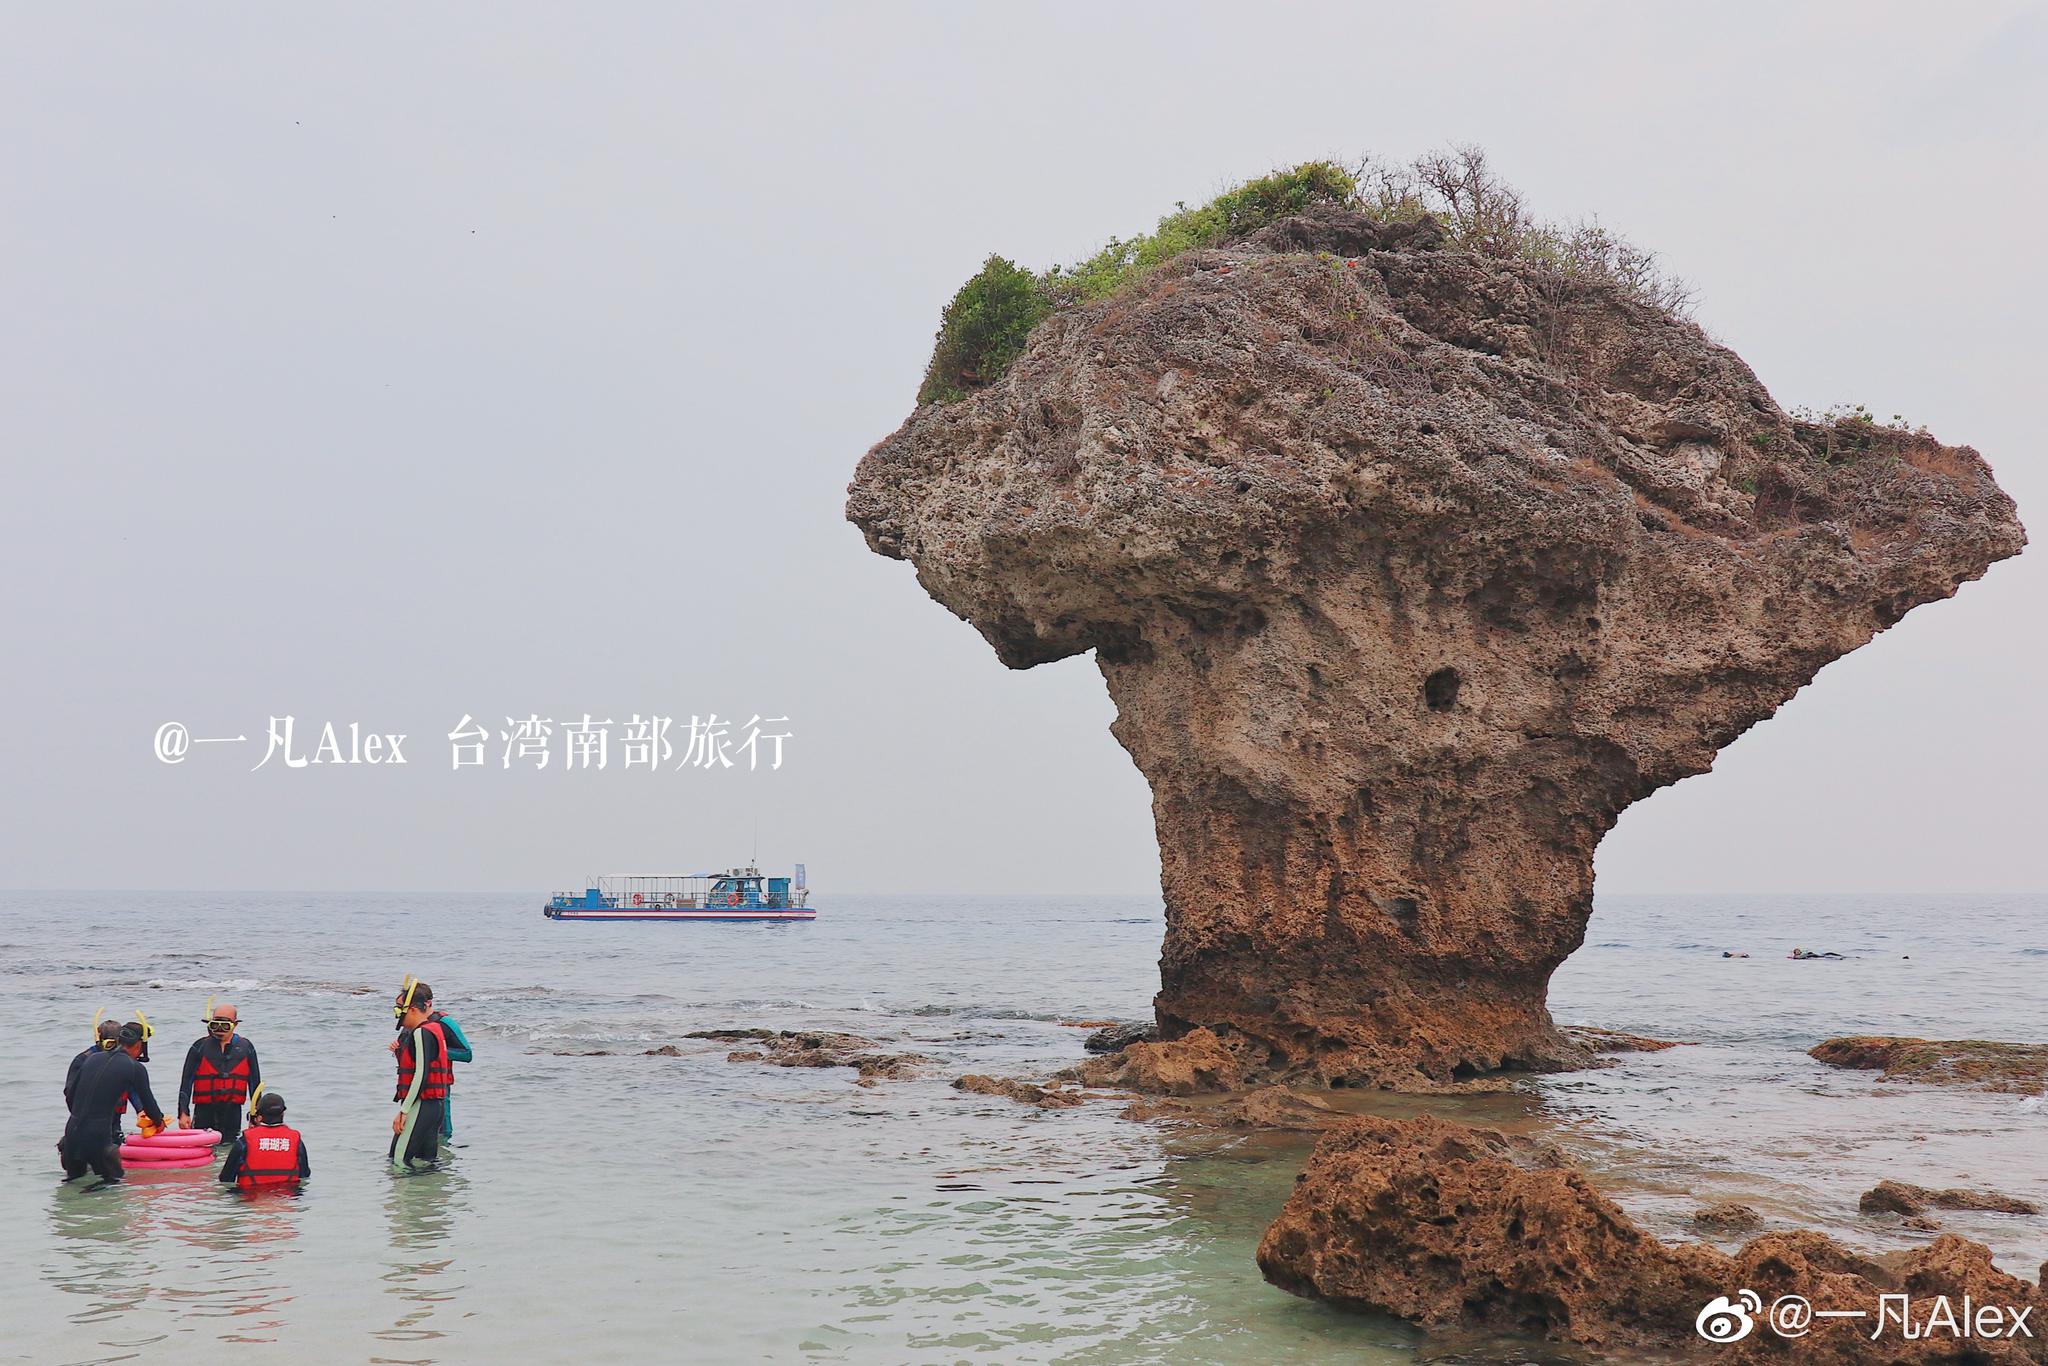 小琉球岛丰富多彩的潜水生活 这里是台湾离岛中唯一的珊瑚礁岛